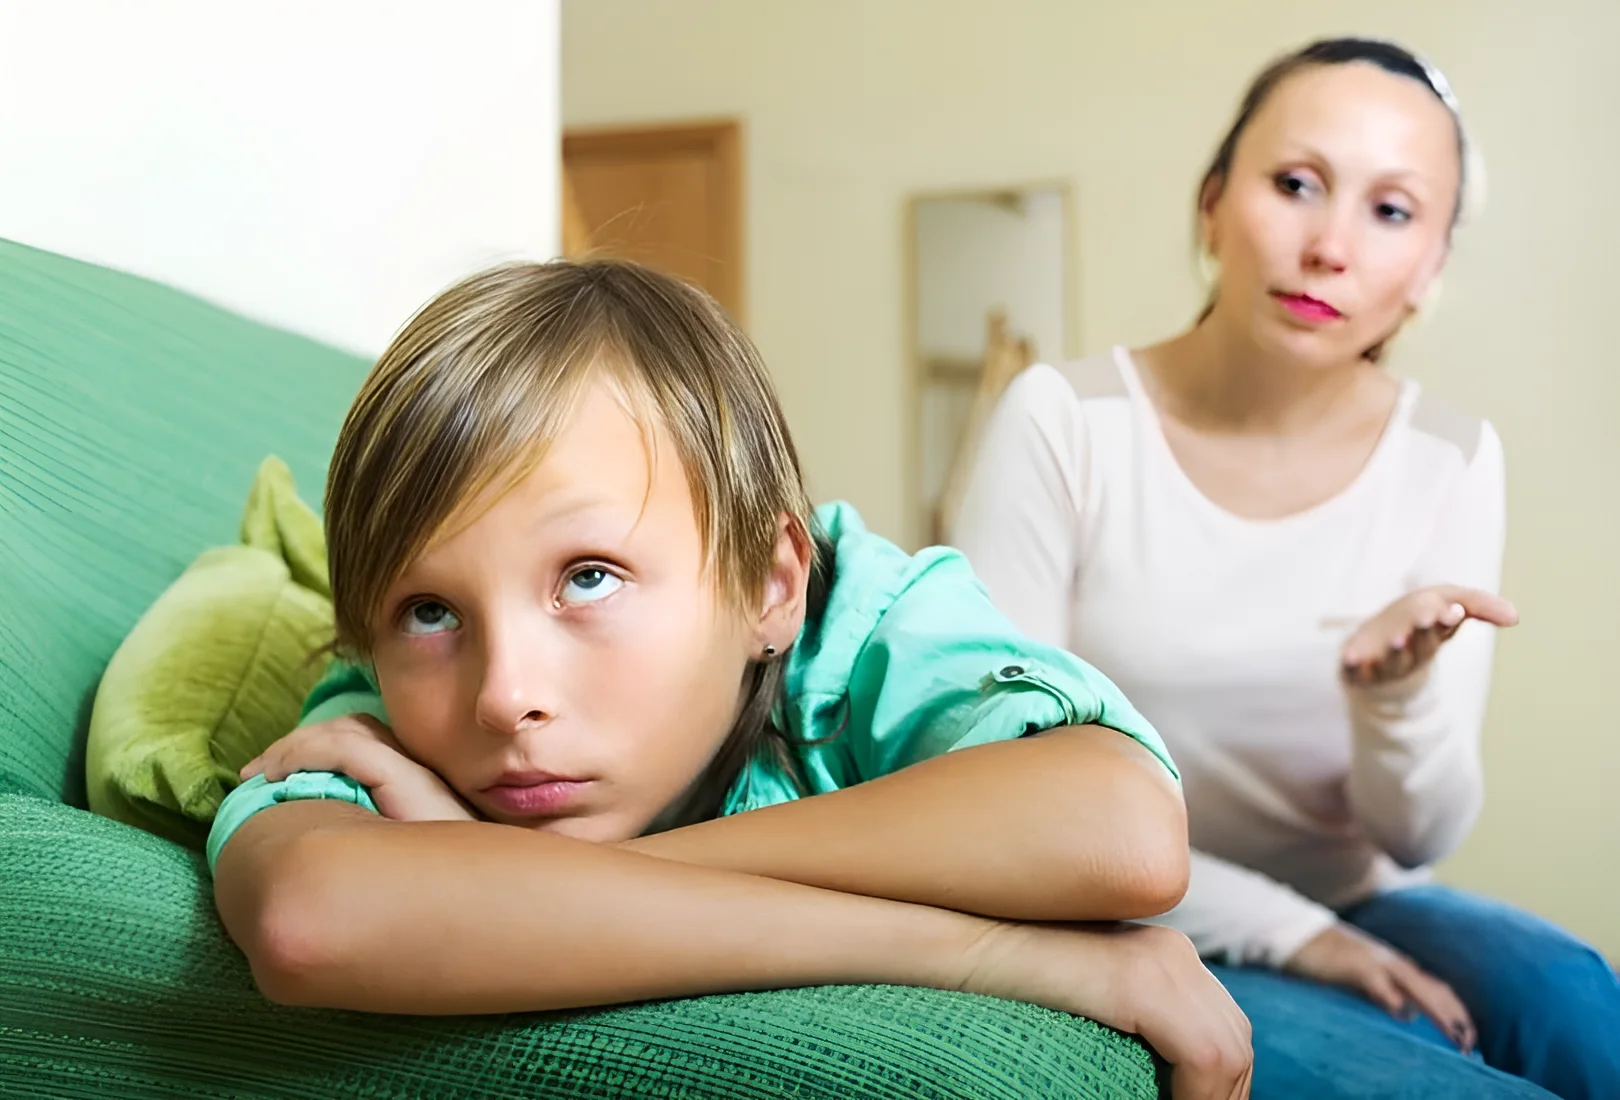 5 erros que podem fazer com que crianças felizes se tornem adultos infelizes